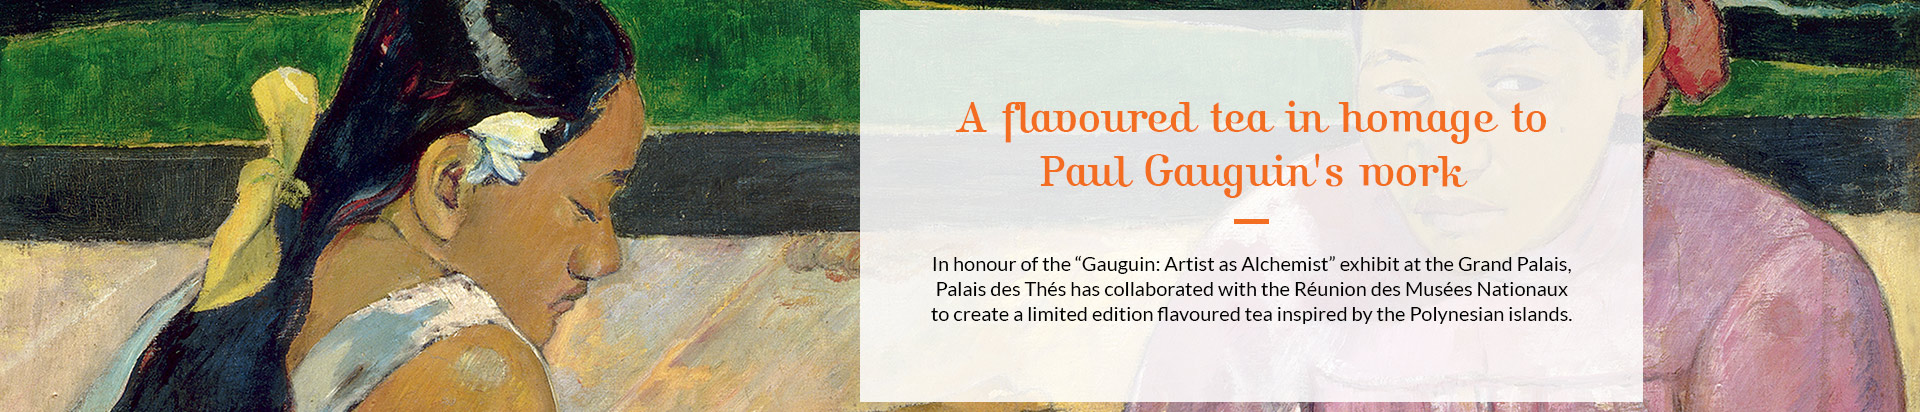 Un thÃ© parfumÃ© en hommage Ã  Paul Gauguin